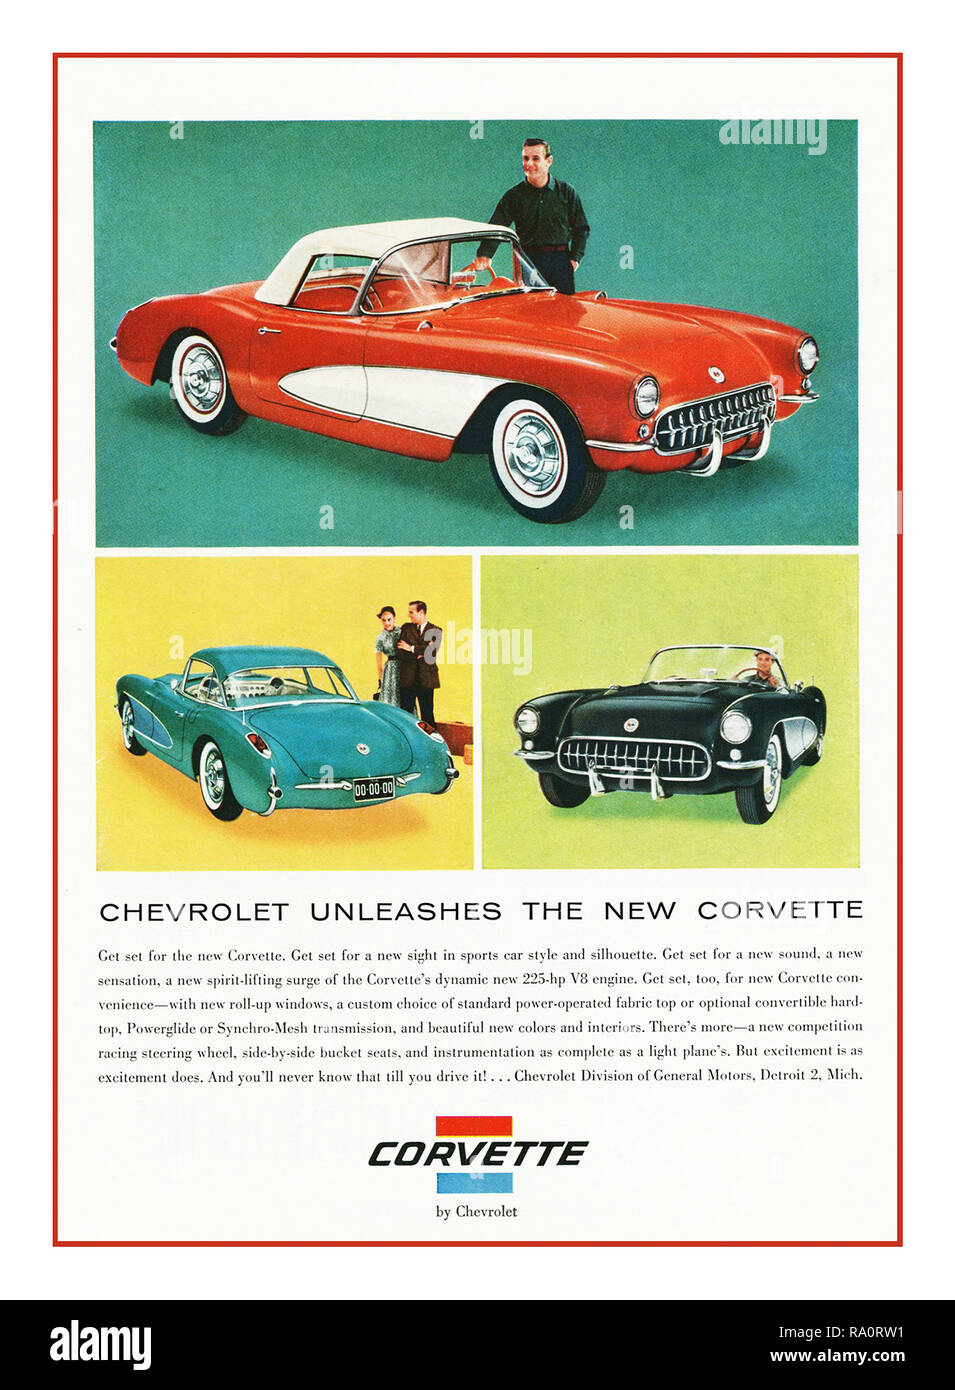 CORVETTE 1960 American Automobile anuncio 1961 Chevrolet Corvette Publicidad " Chevrolet Descubre el nuevo Corvette" Americana icónico automóvil deportivo superior duro/suave touring 2+2 plazas América coche músculo coche Foto de stock